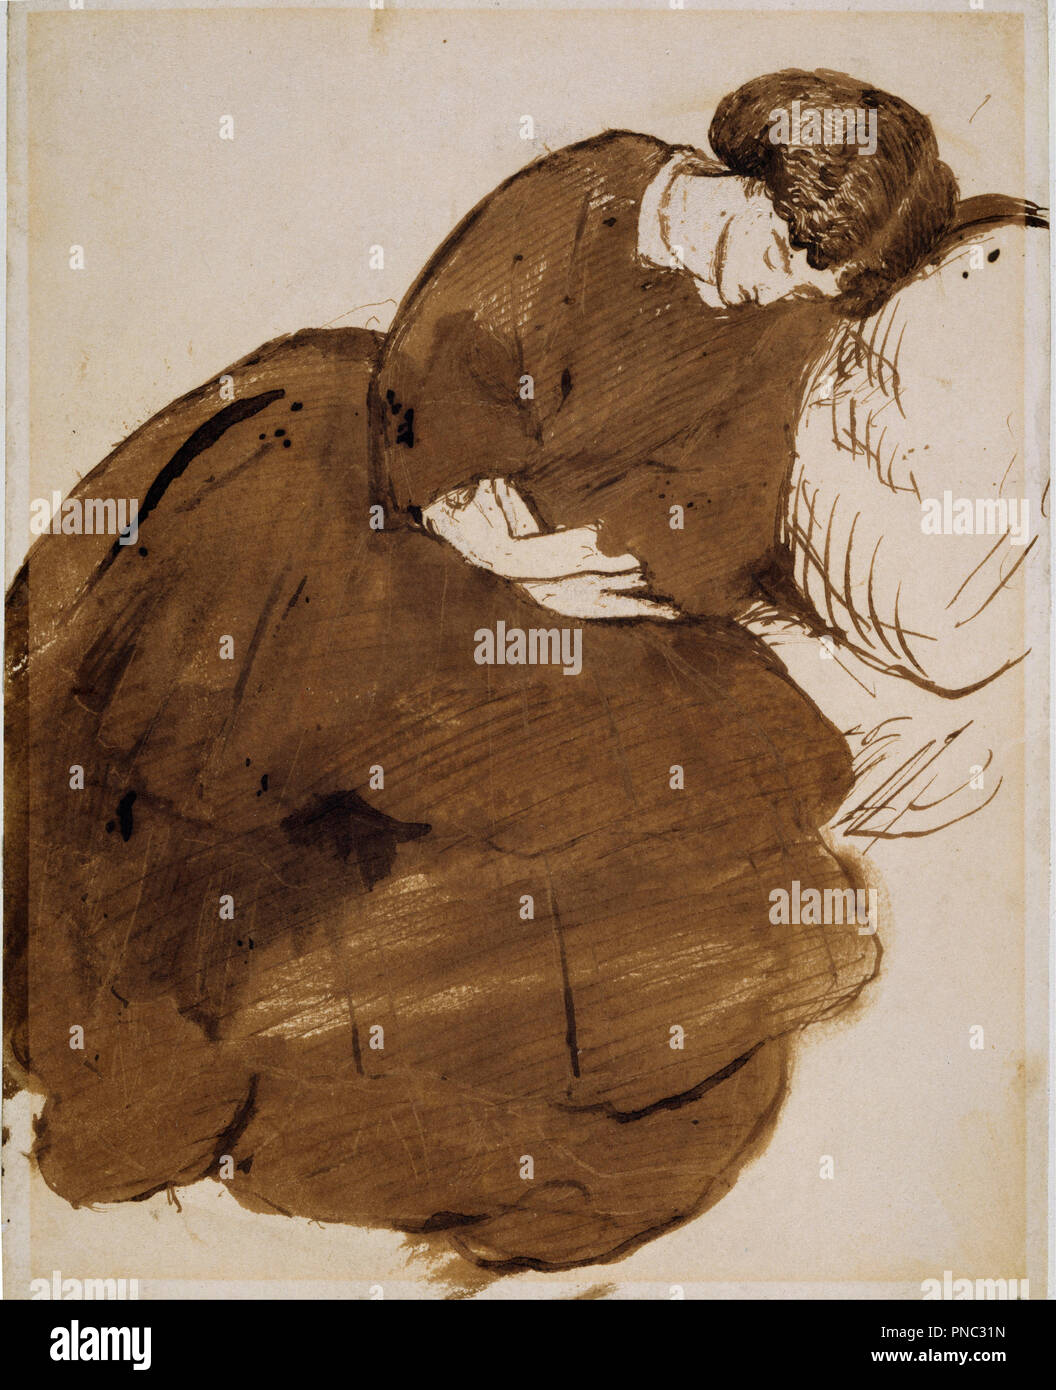 Portrait de Jane Morris endormi sur un canapé. Date/Période : 1869/1871. Plume et encre brune et lavis à l'encre, sur papier. Largeur : 151 mm. Hauteur : 241 mm. Auteur : Dante Gabriel Rossetti. Banque D'Images